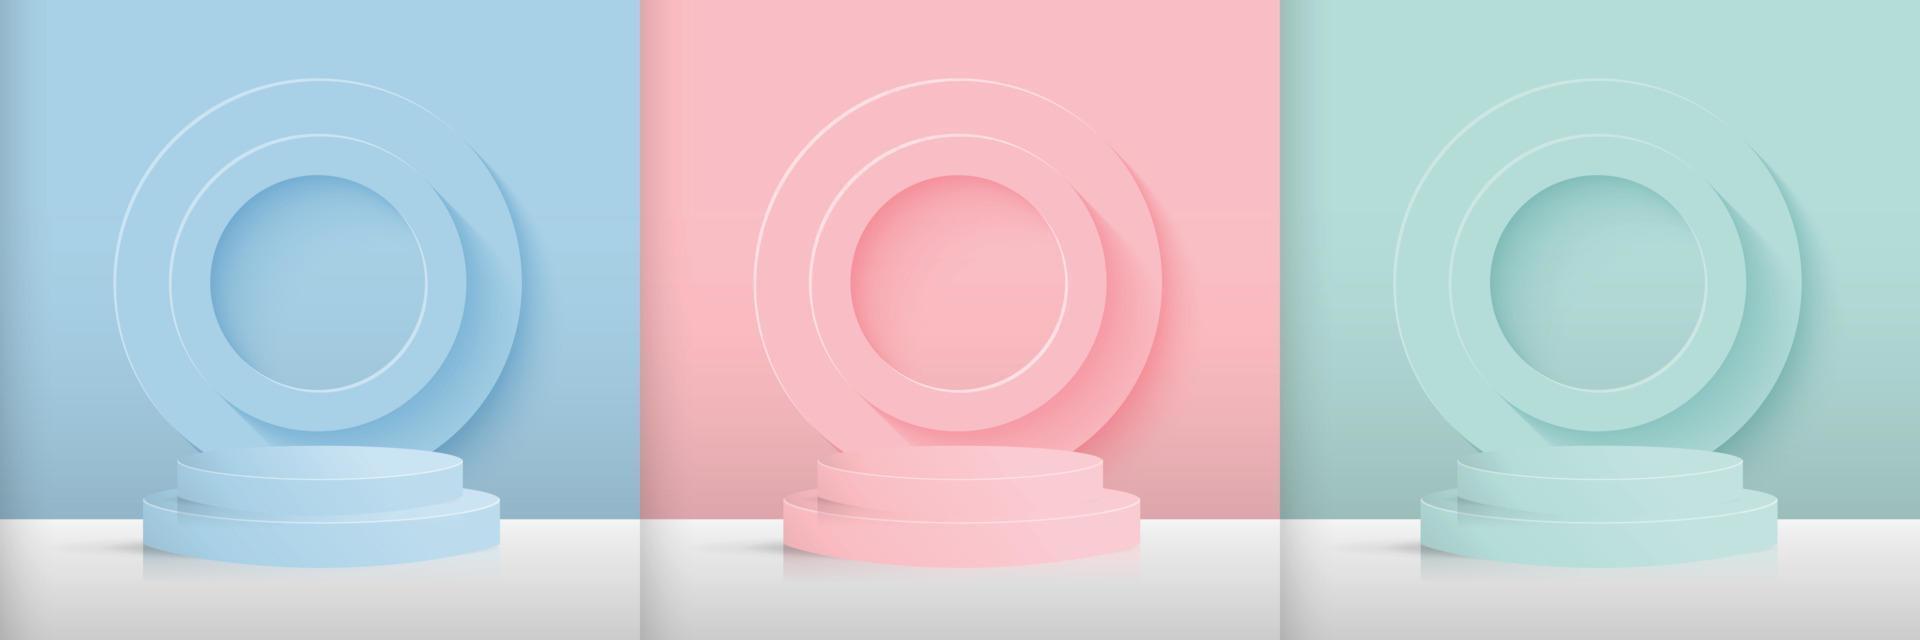 Set aus blauen, rosa und grünen Zylinderbasen auf gestapeltem Kreishintergrund. moderne abstrakte Vektorillustration, die 3D-Formen für Produkte zeigt, die Präsentationen zeigen. einfache pastellfarbene wandkulisse. vektor